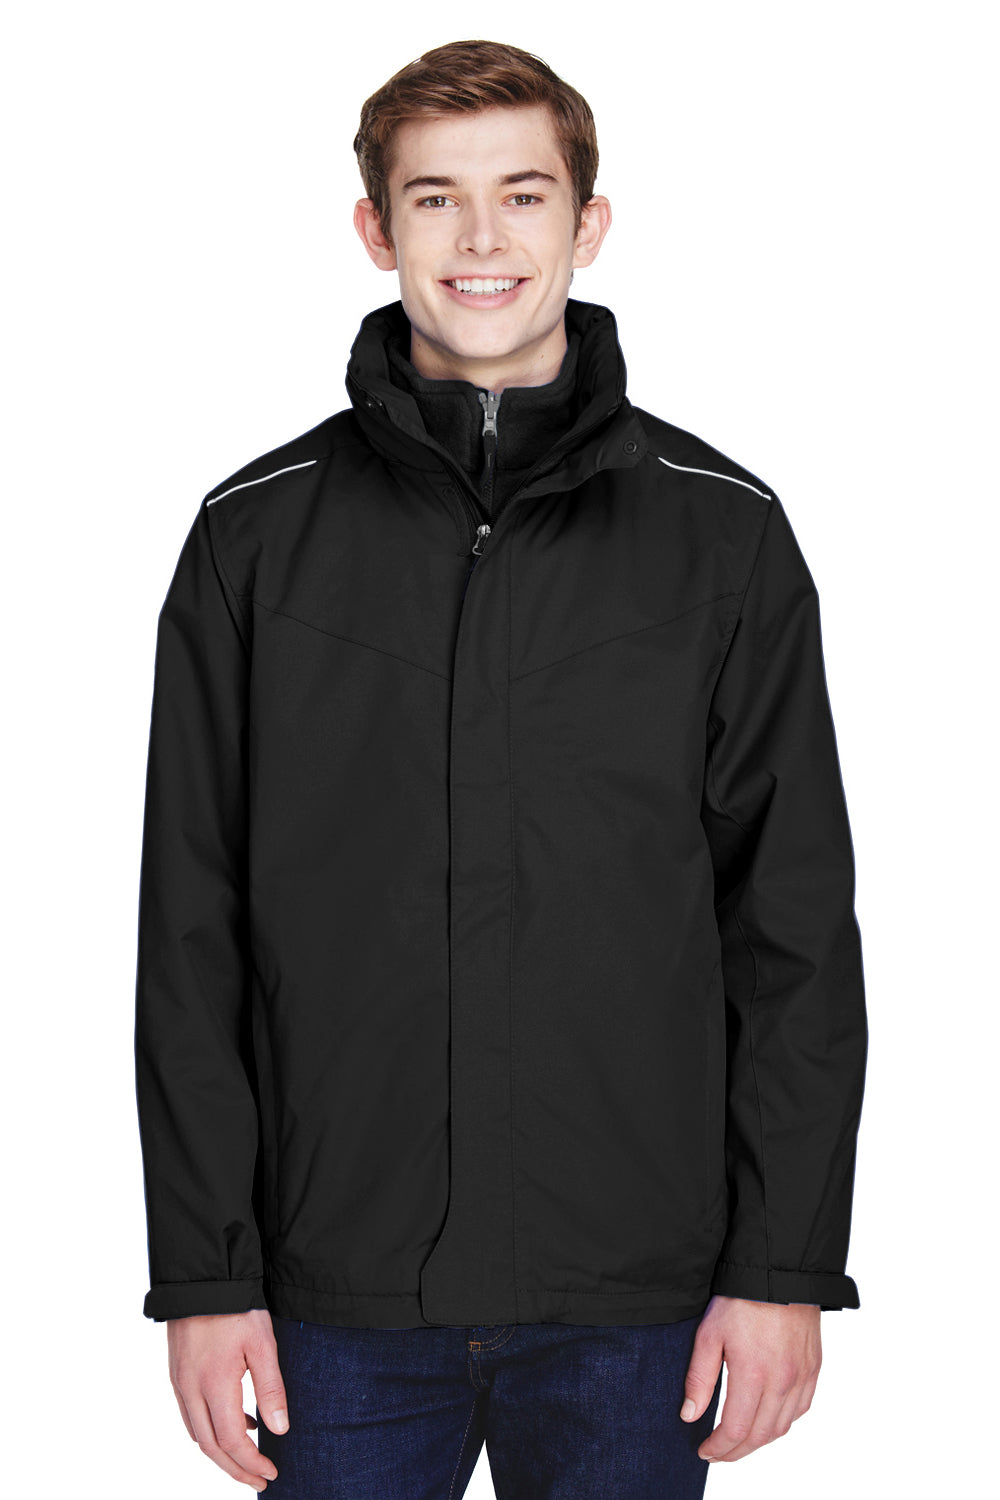 Core 365 88205 Mens Region 3-in-1 Water Resistant Full Zip Hooded Jacket Black Front